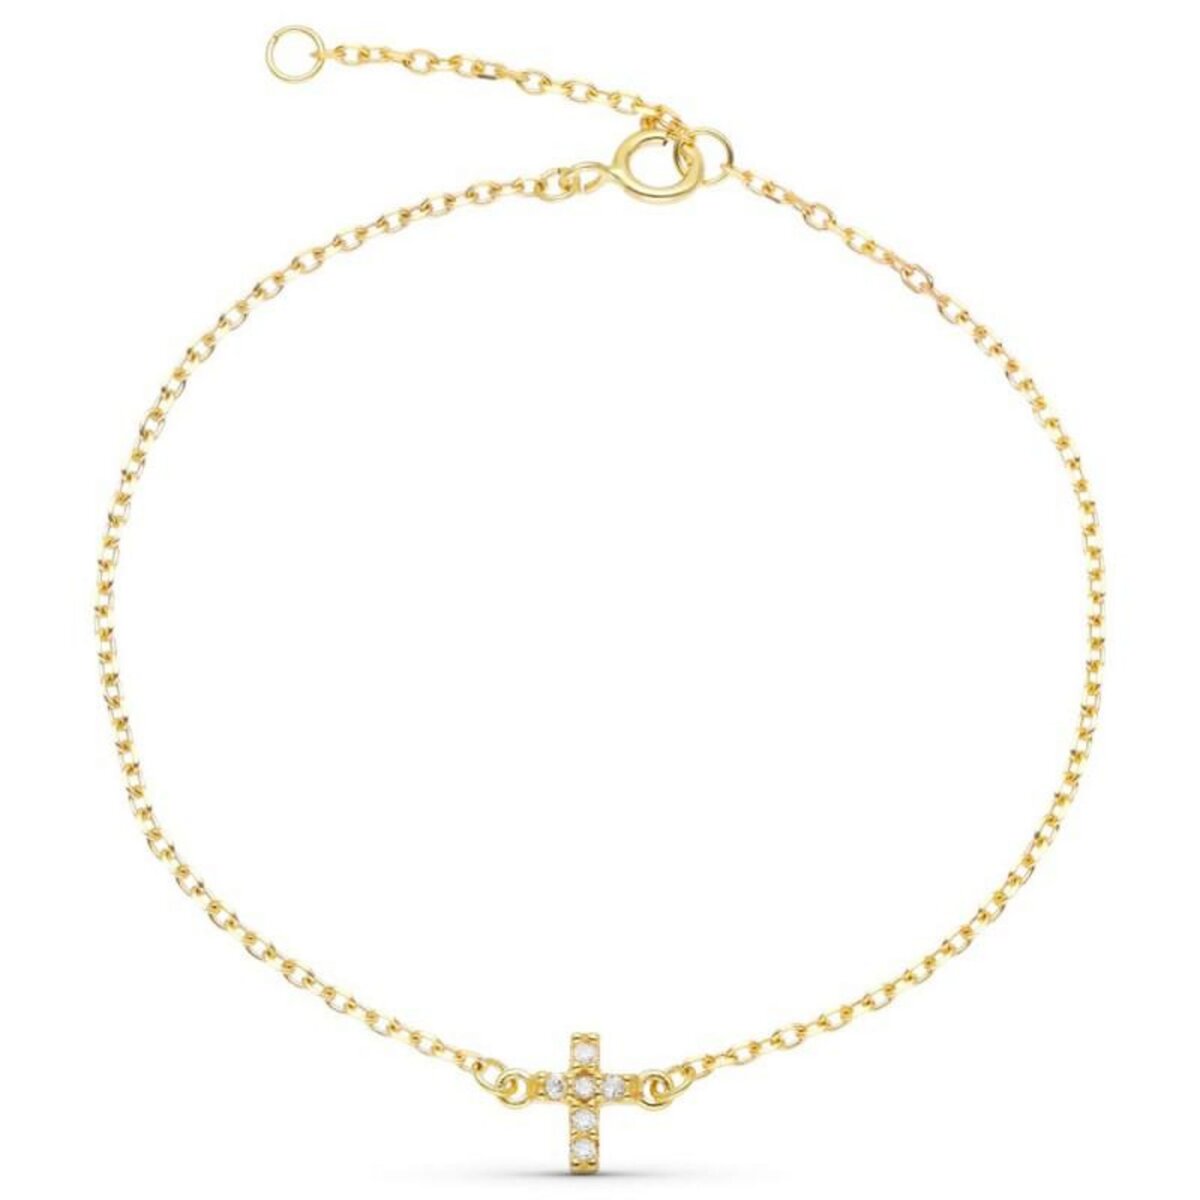 L'ATELIER D'AZUR Bracelet Or Jaune et Diamants - Motif Croix - Femme